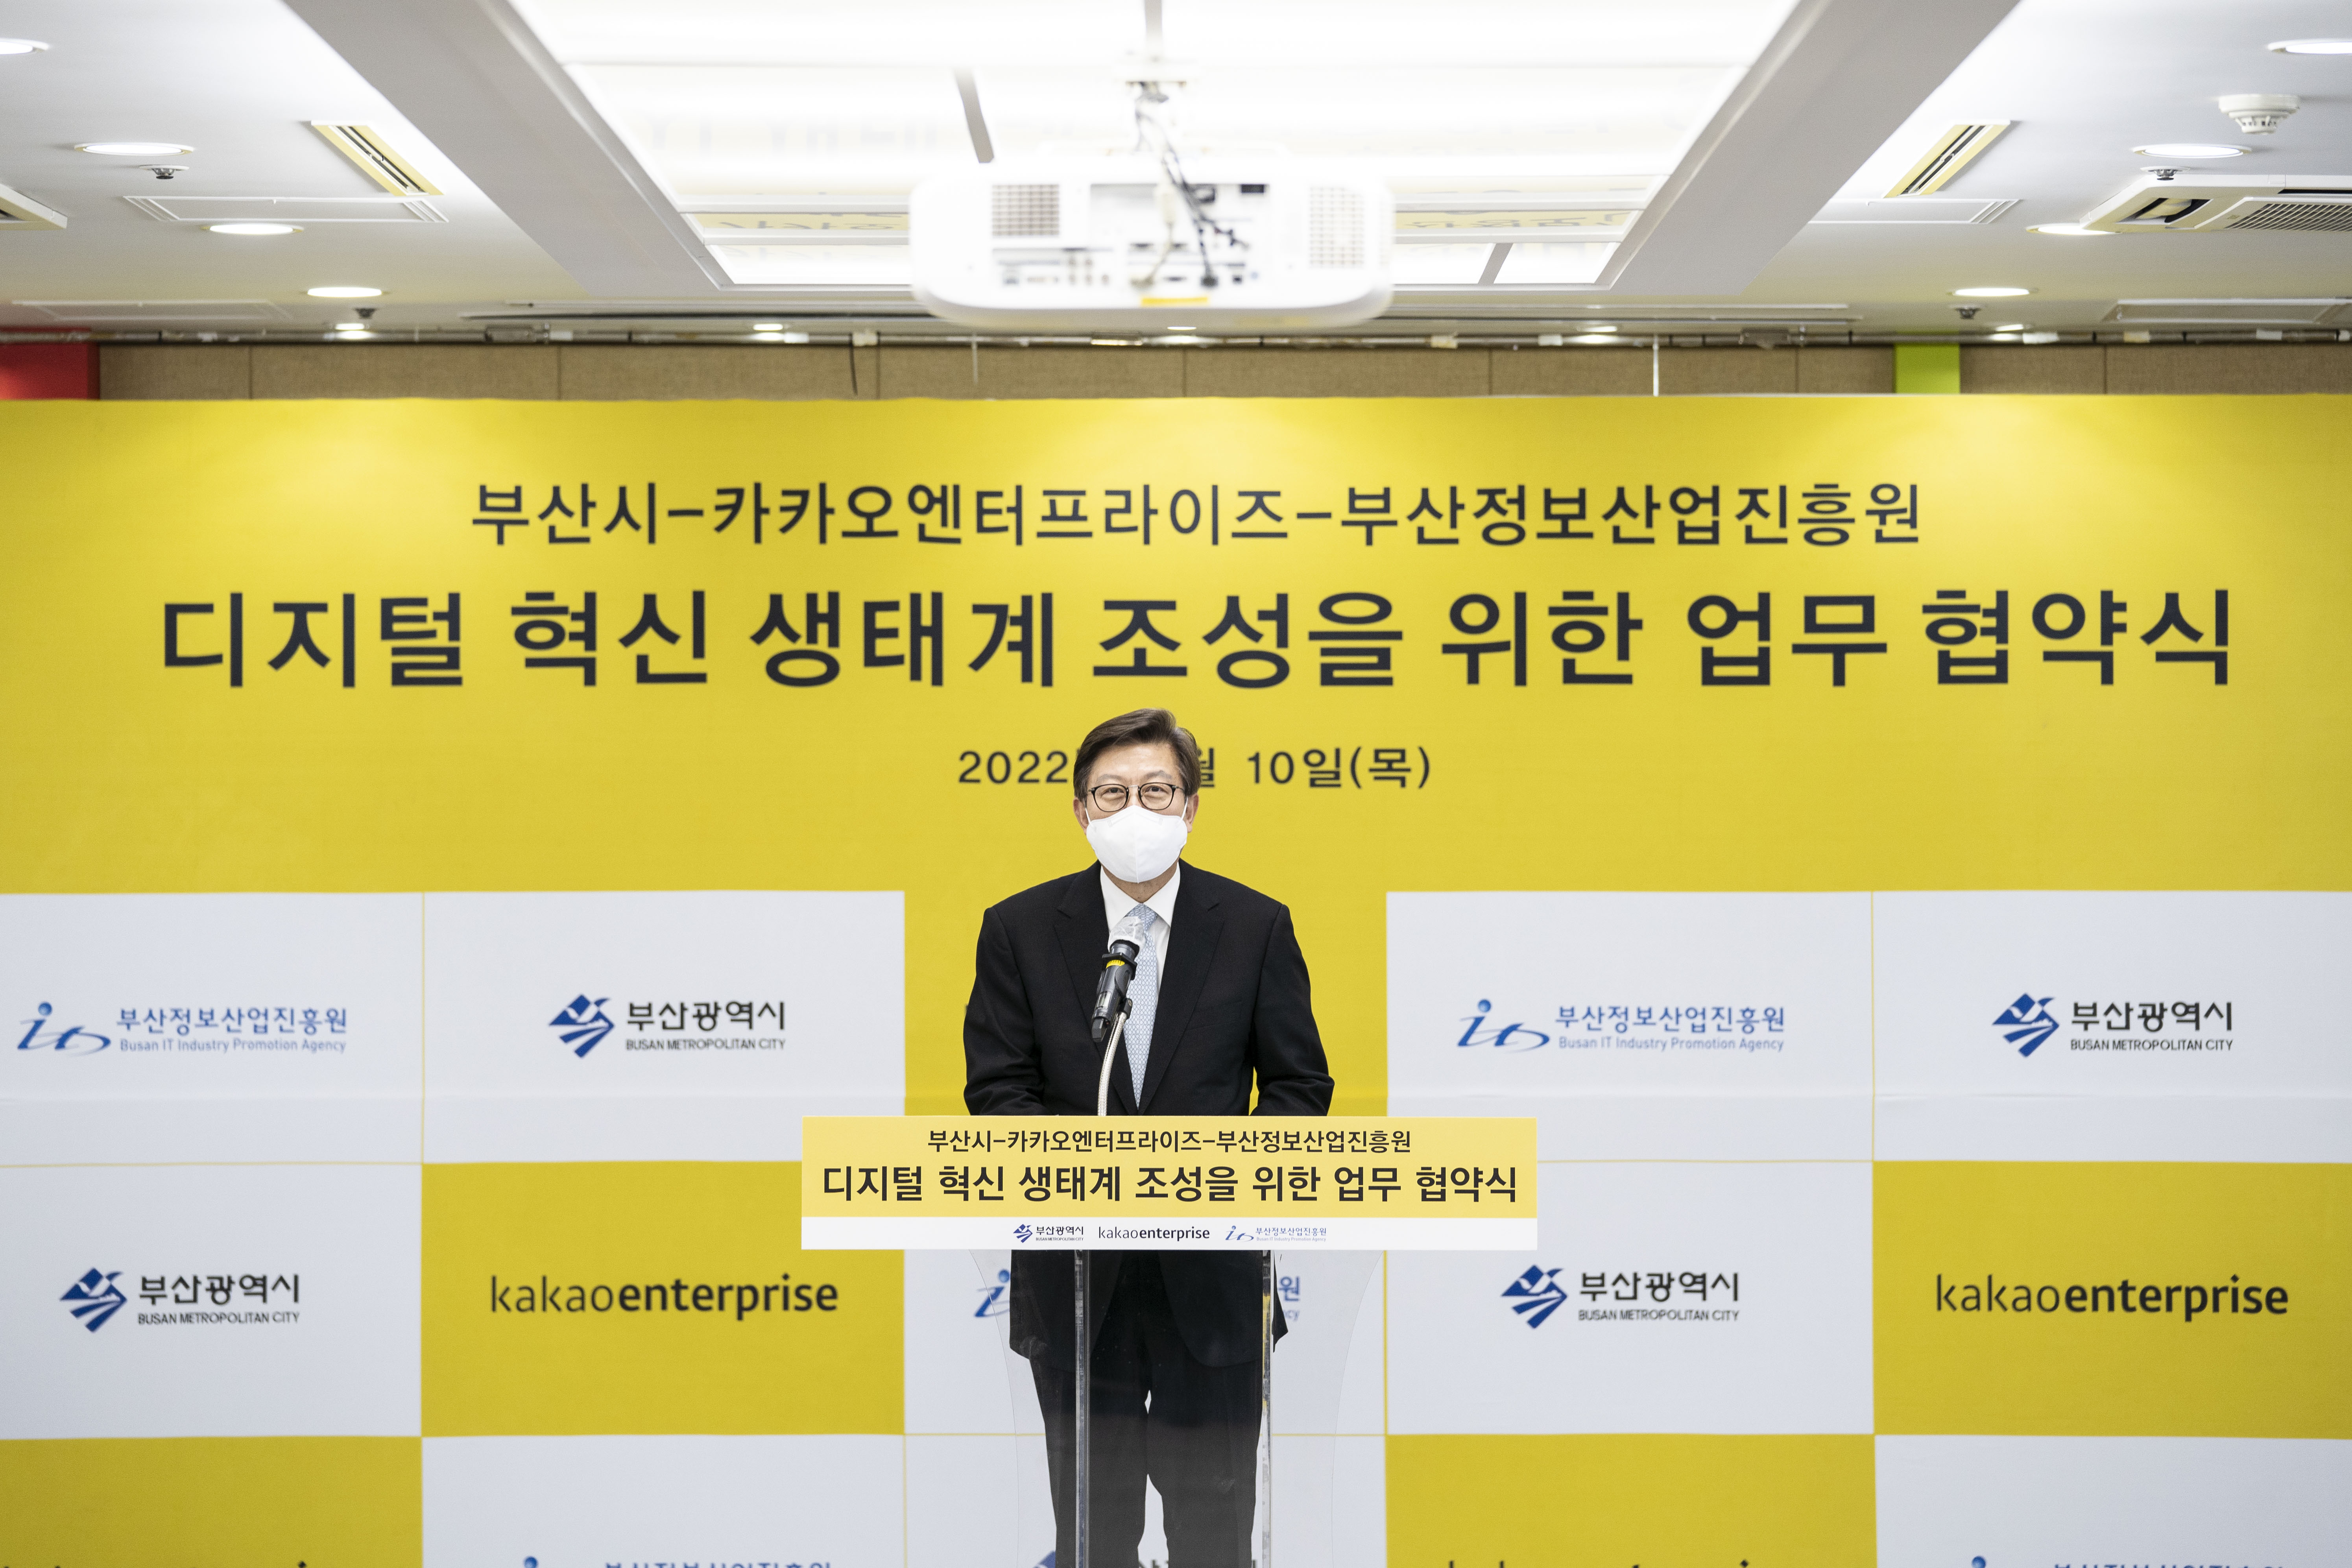 20220210 부산시-카카오엔터프라이즈 업무협약식 (26층 회의실) 사진4